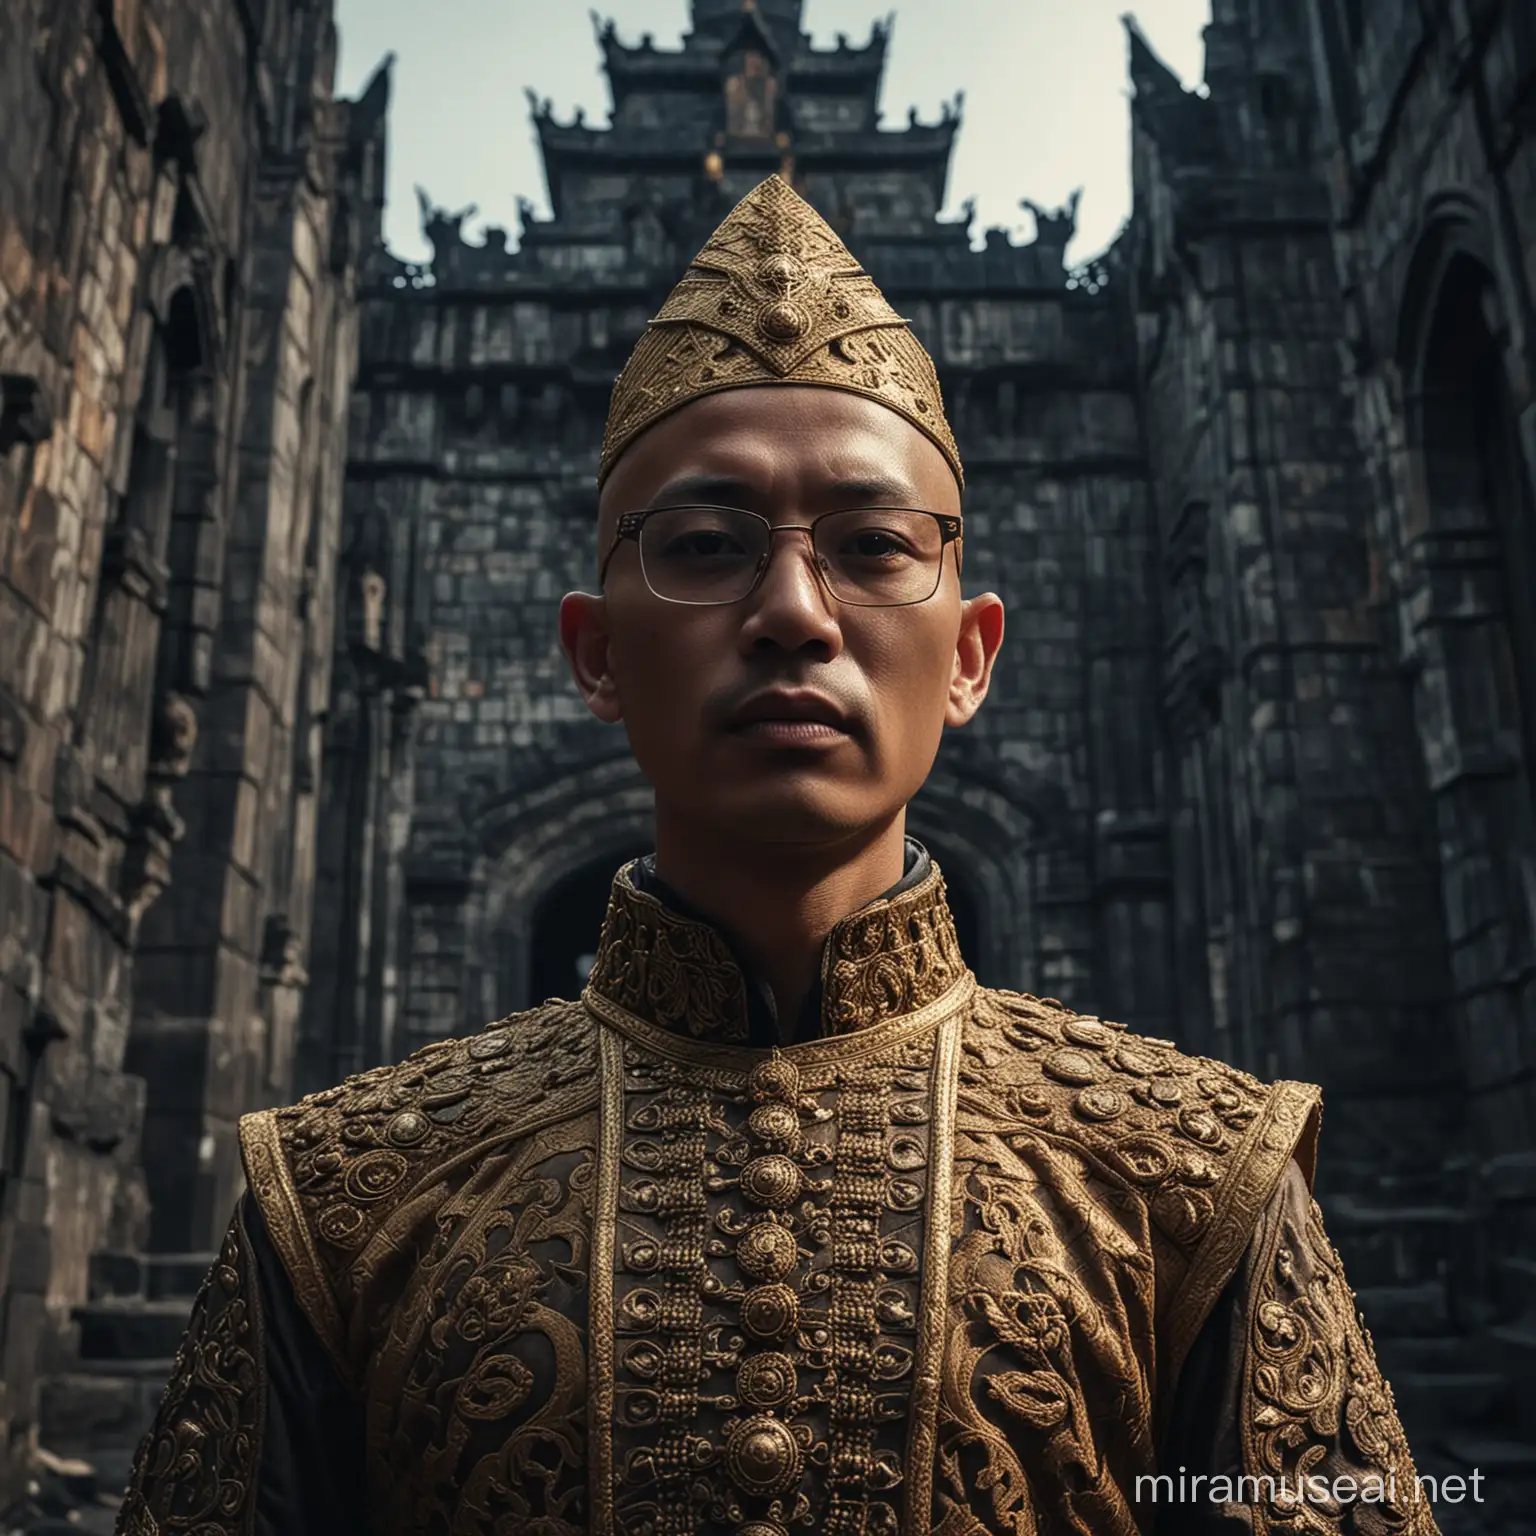 Pria Indonesia berkepala botak dan berkacamata berdiri di tepi kastil yang gelap, memakai kostum kebesaran raja